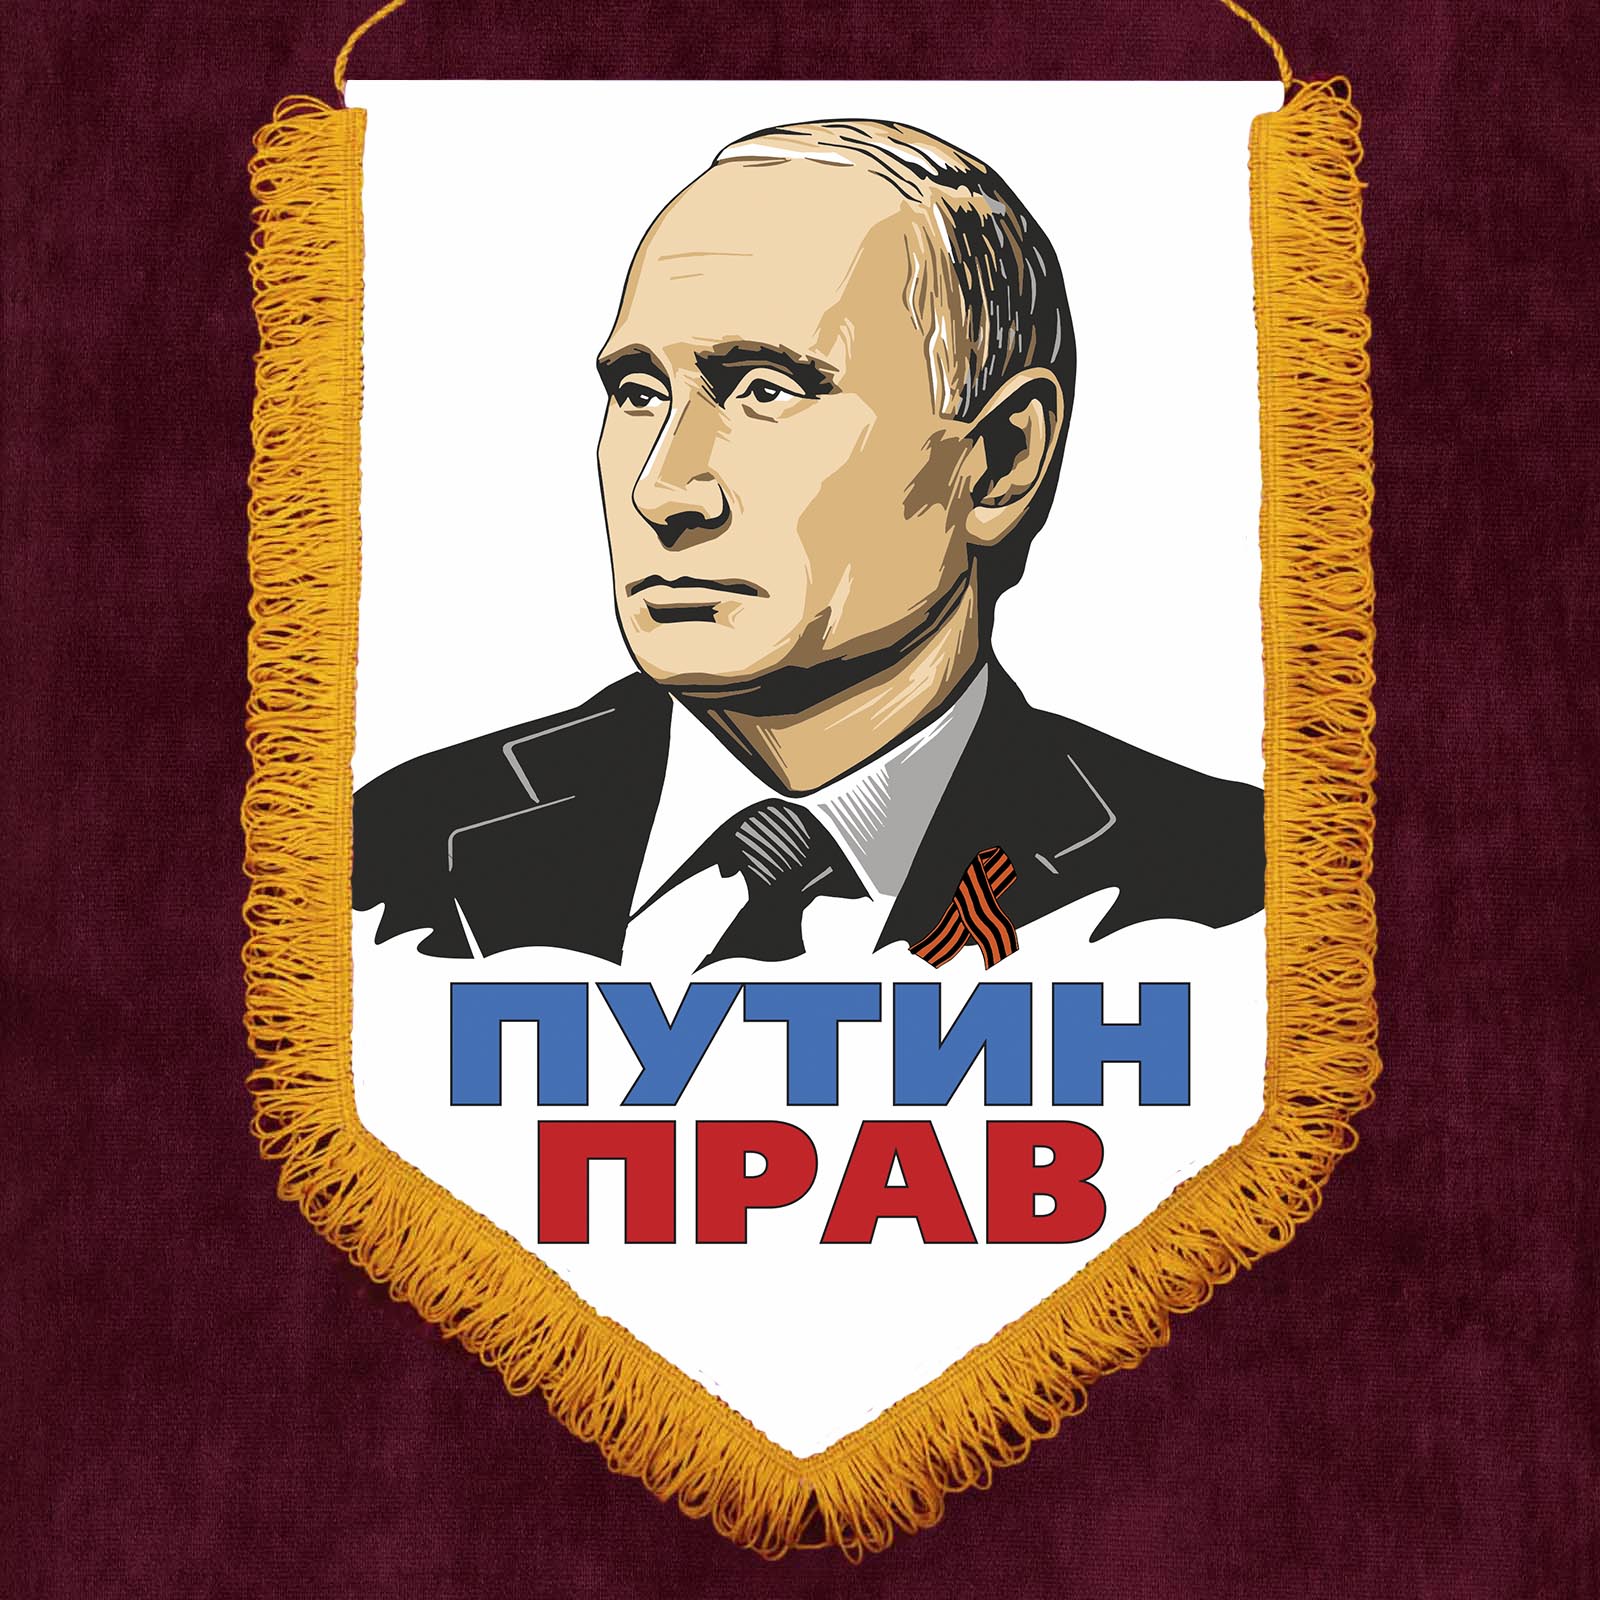 Памятный вымпел "Путин прав"